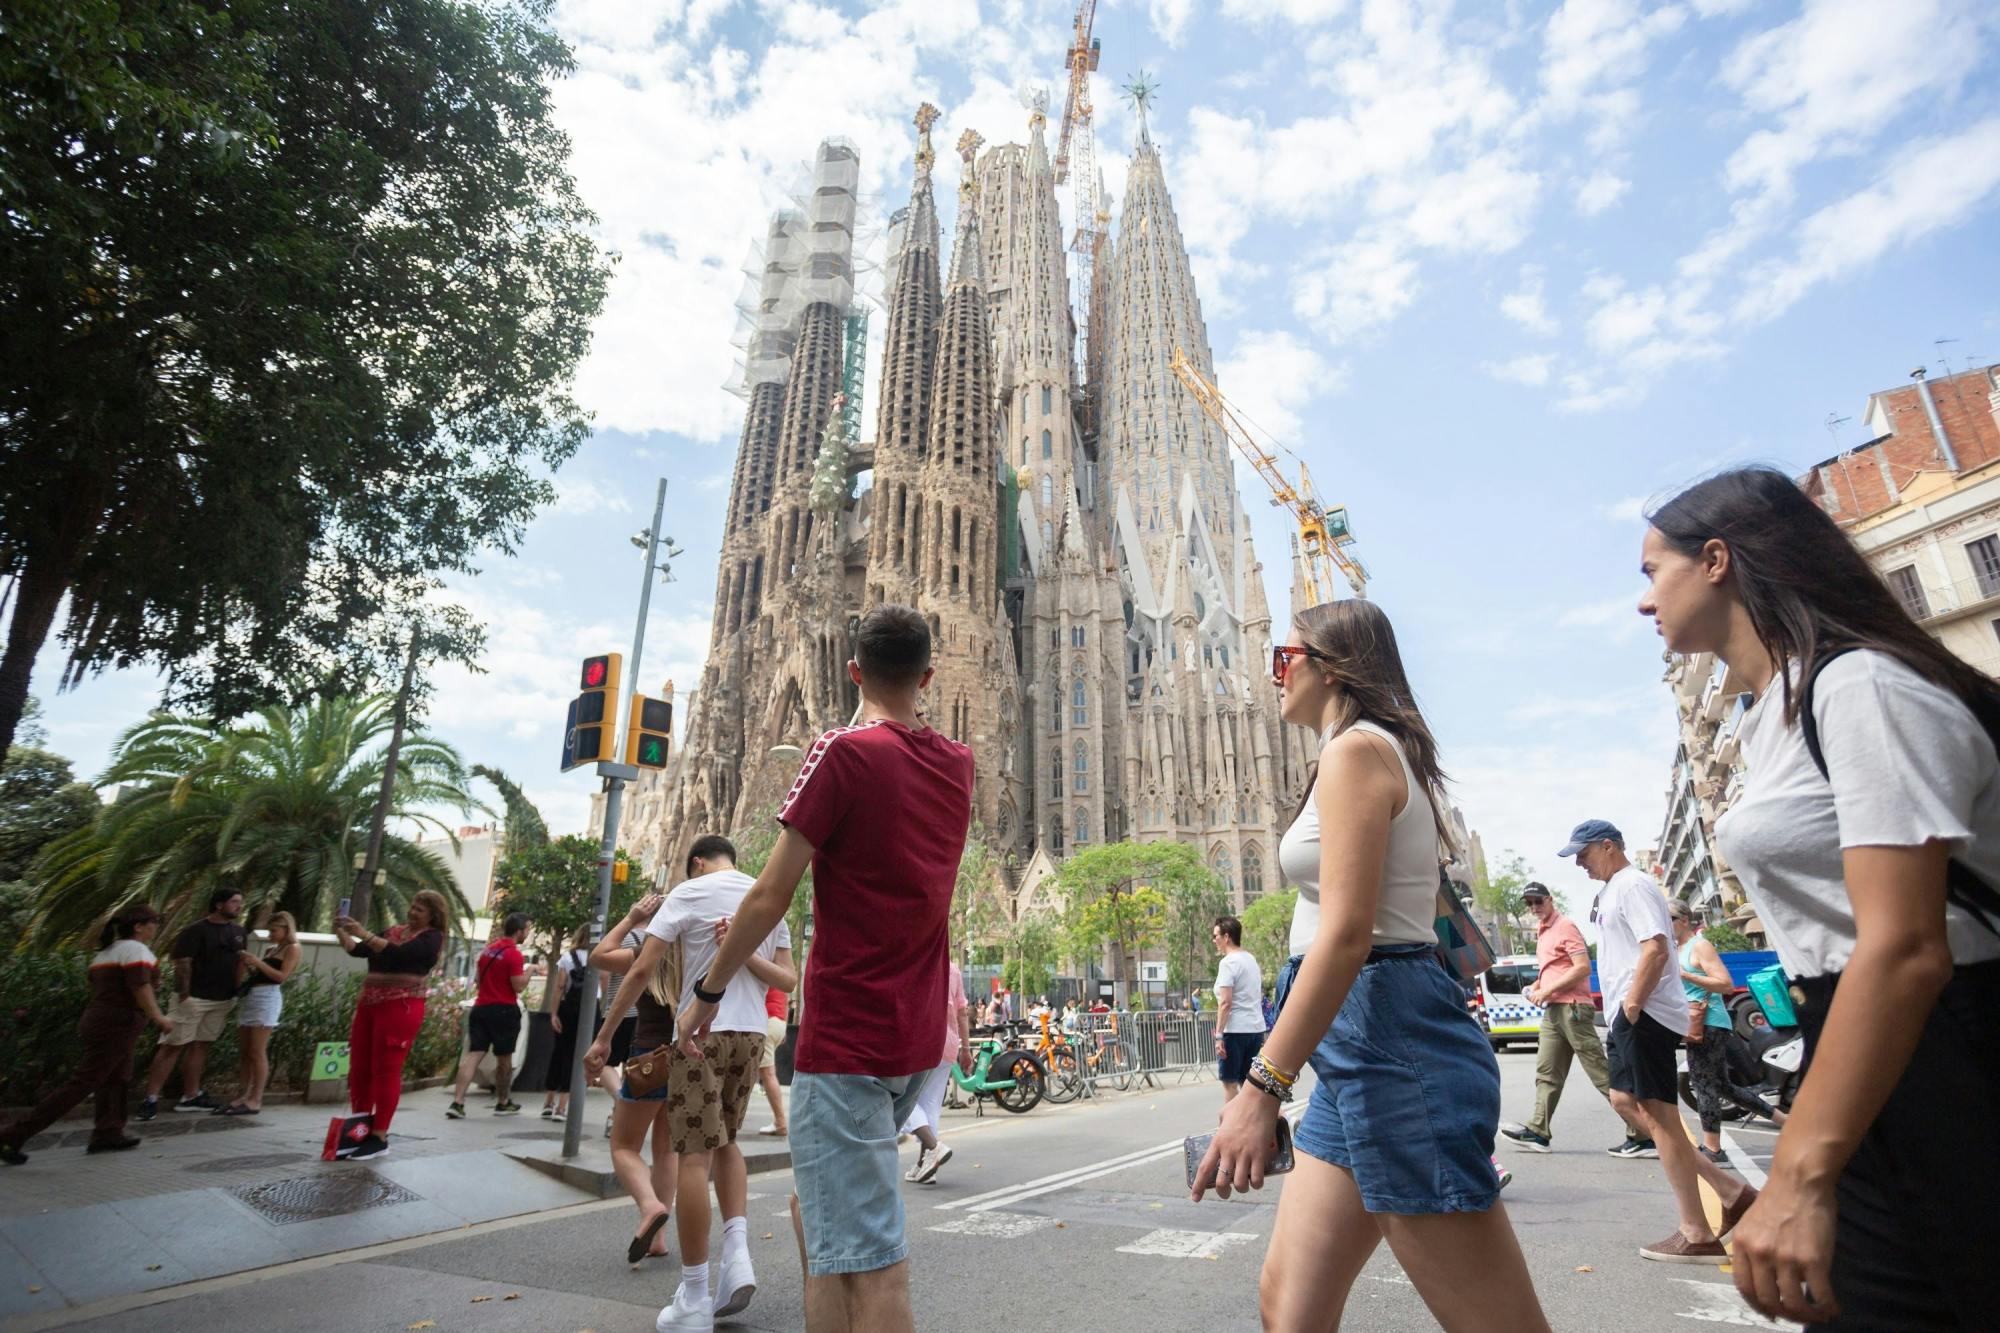 Entradas e visita guiada à Sagrada Família